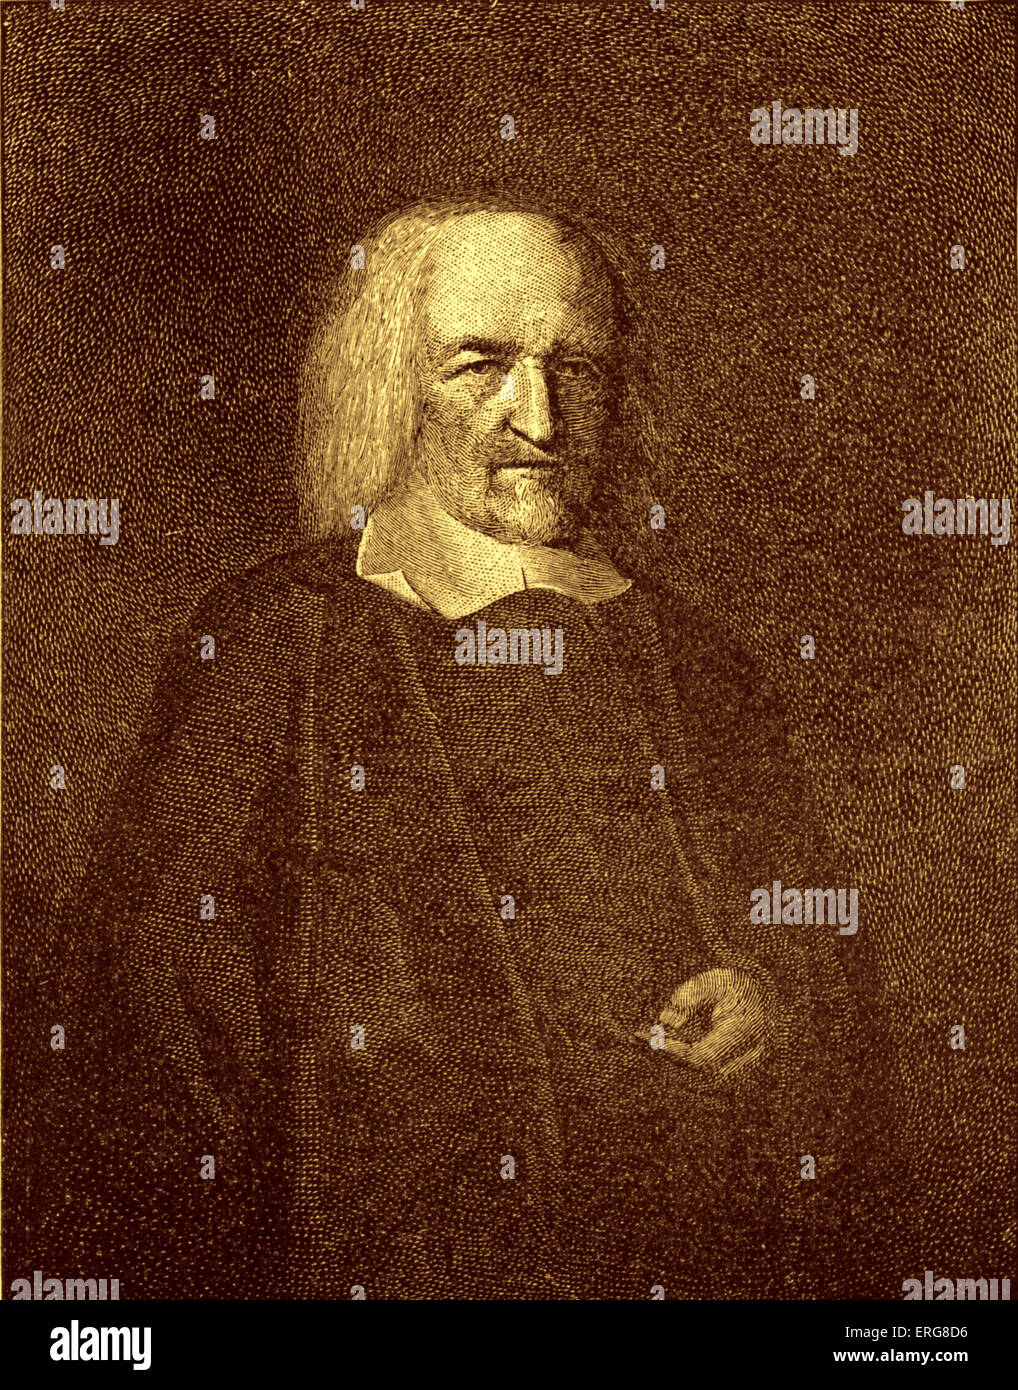 Thomas Hobbes, après le portrait original de John Michael Wright. Philosophe anglais, 5 avril, 1588 - 4 décembre, 1679 Banque D'Images